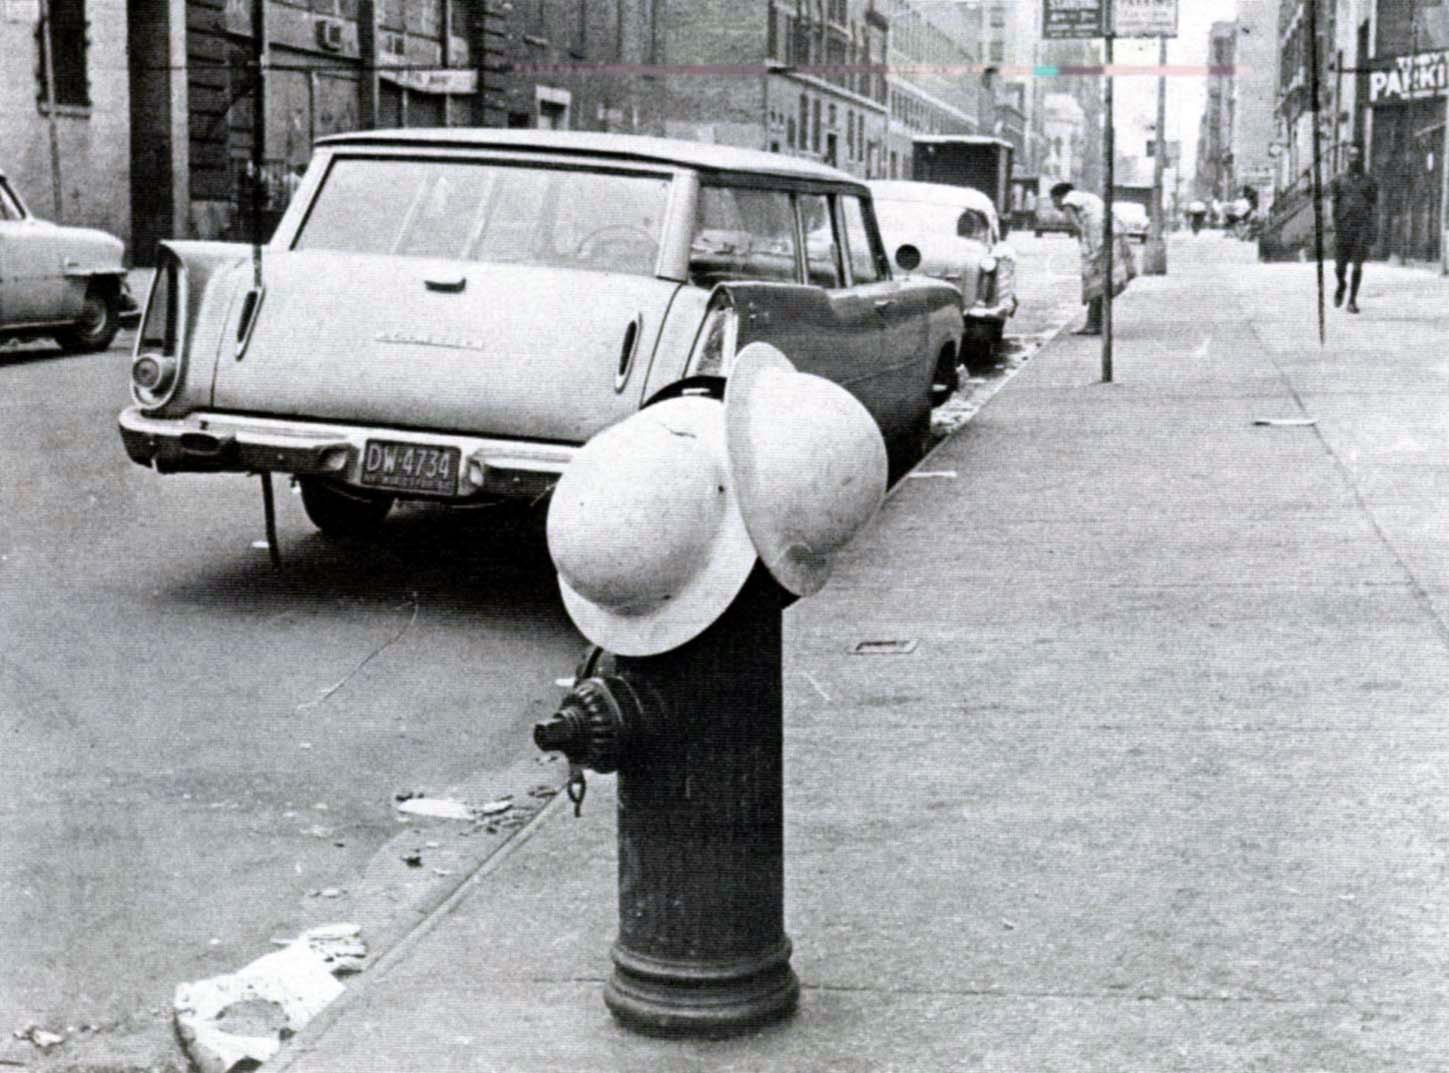 end of Harlem riot 1964